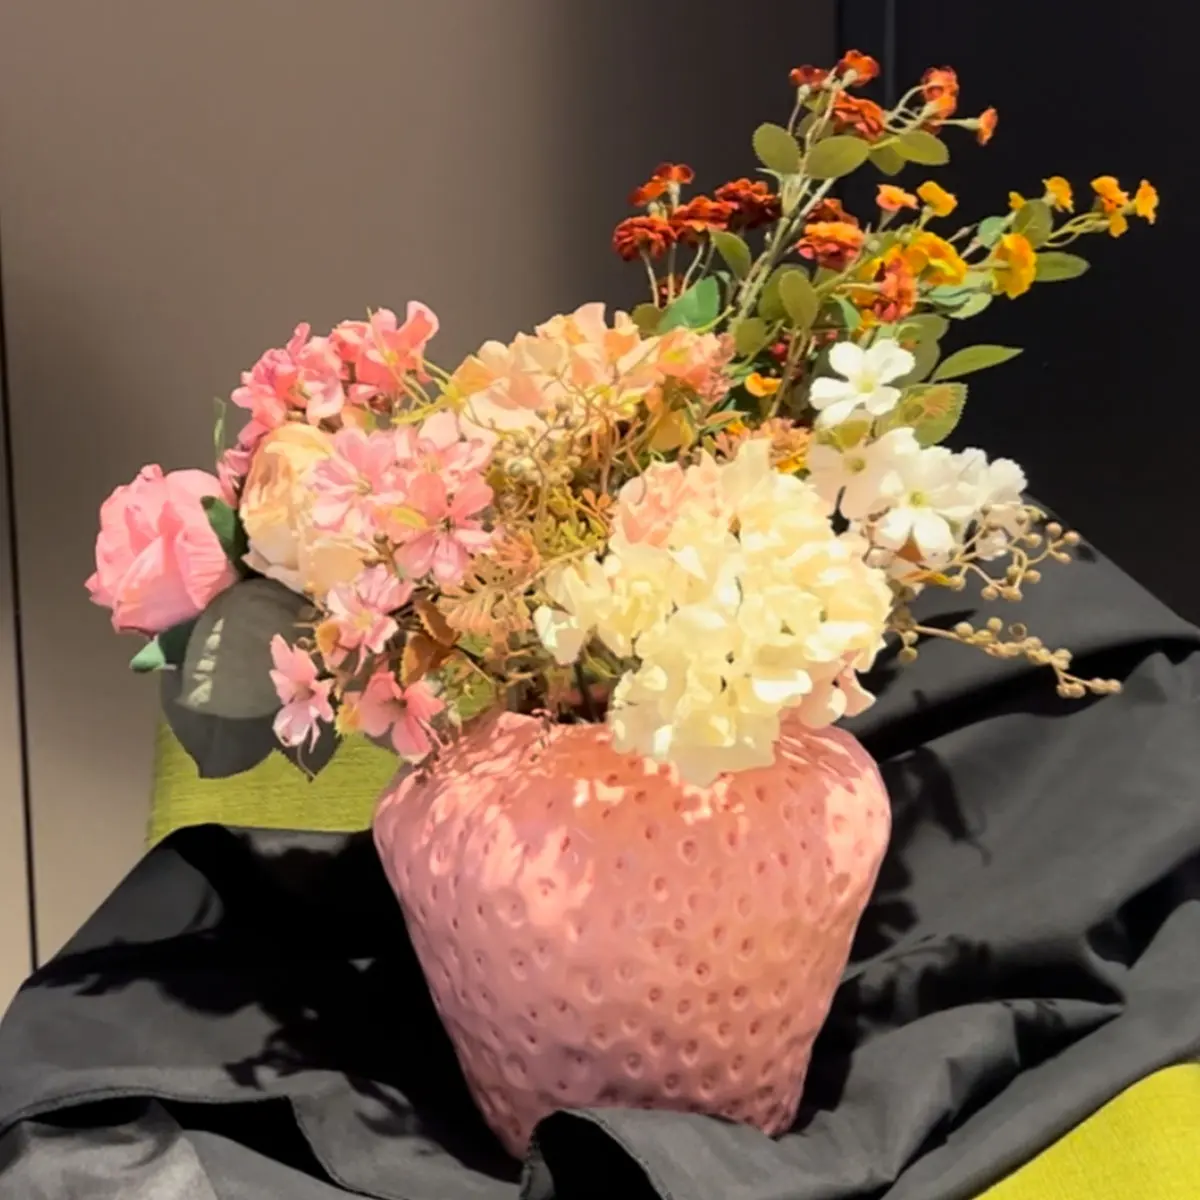 사용자 정의 창조적 인 현대적인 인테리어 디자인 장식 핑크 딸기 꽃병 실내 생생한 과일 모양 세라믹 꽃병